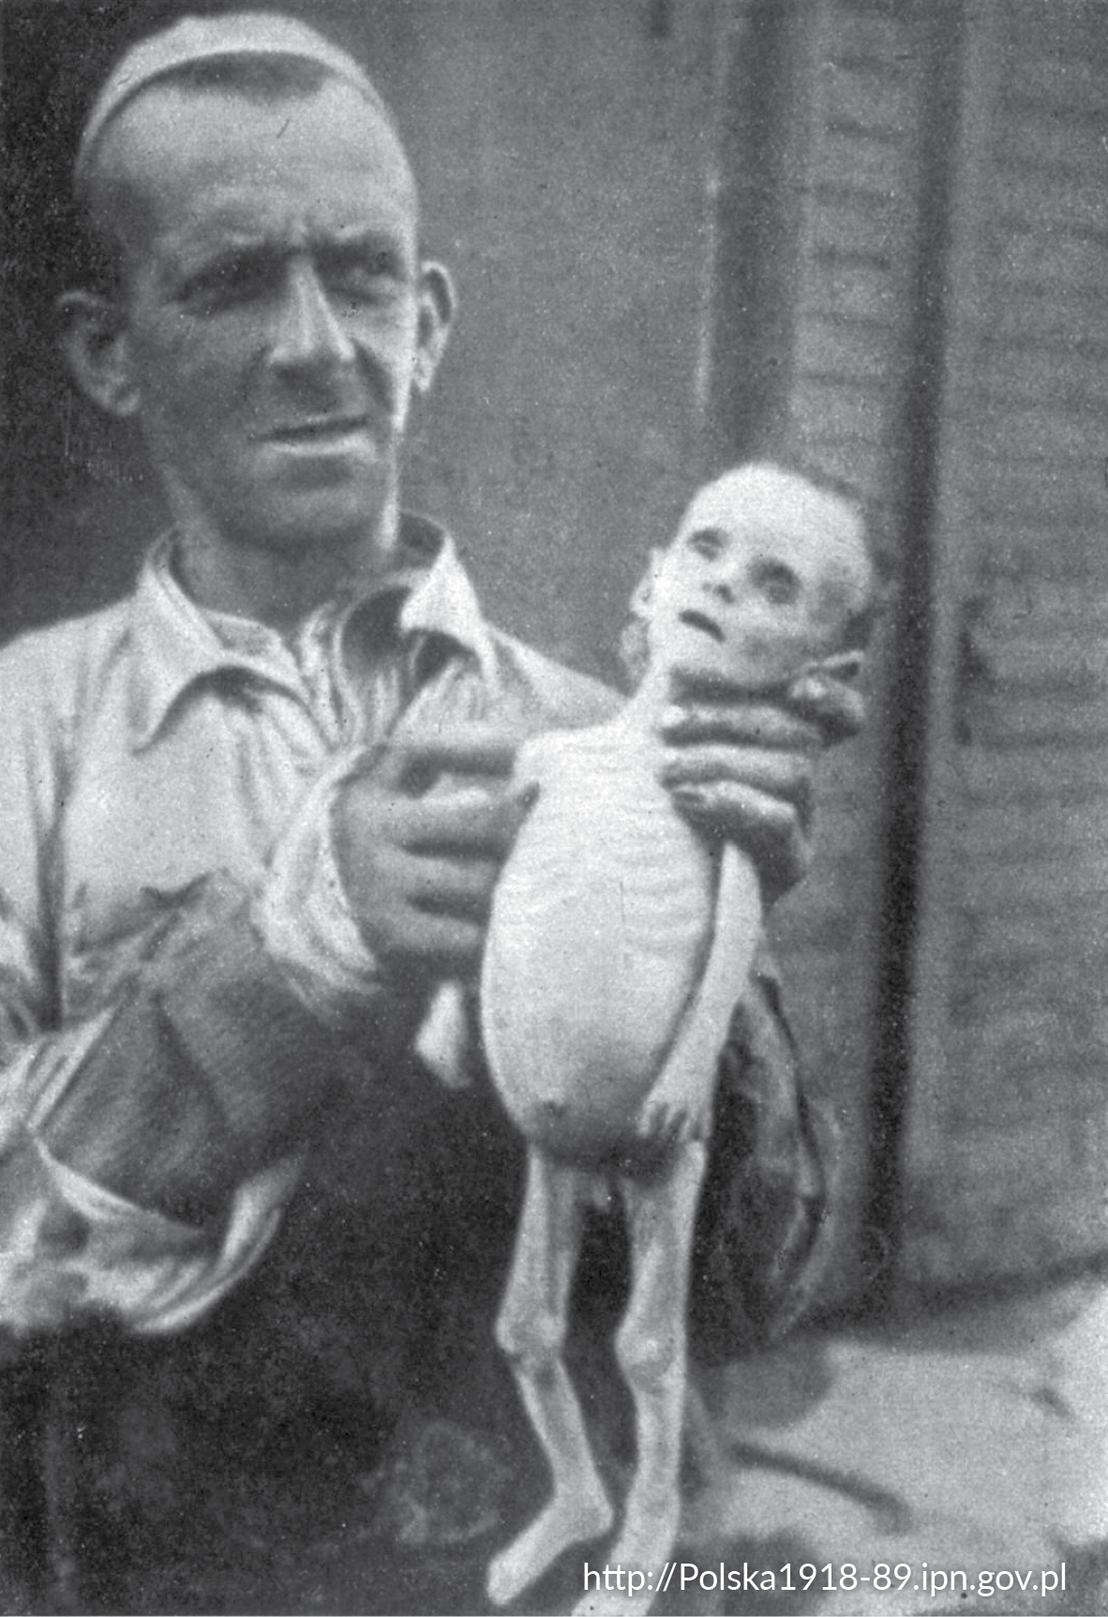 Mężczyzna z ciałem dziecka zmarłego z głodu w warszawskim getcie